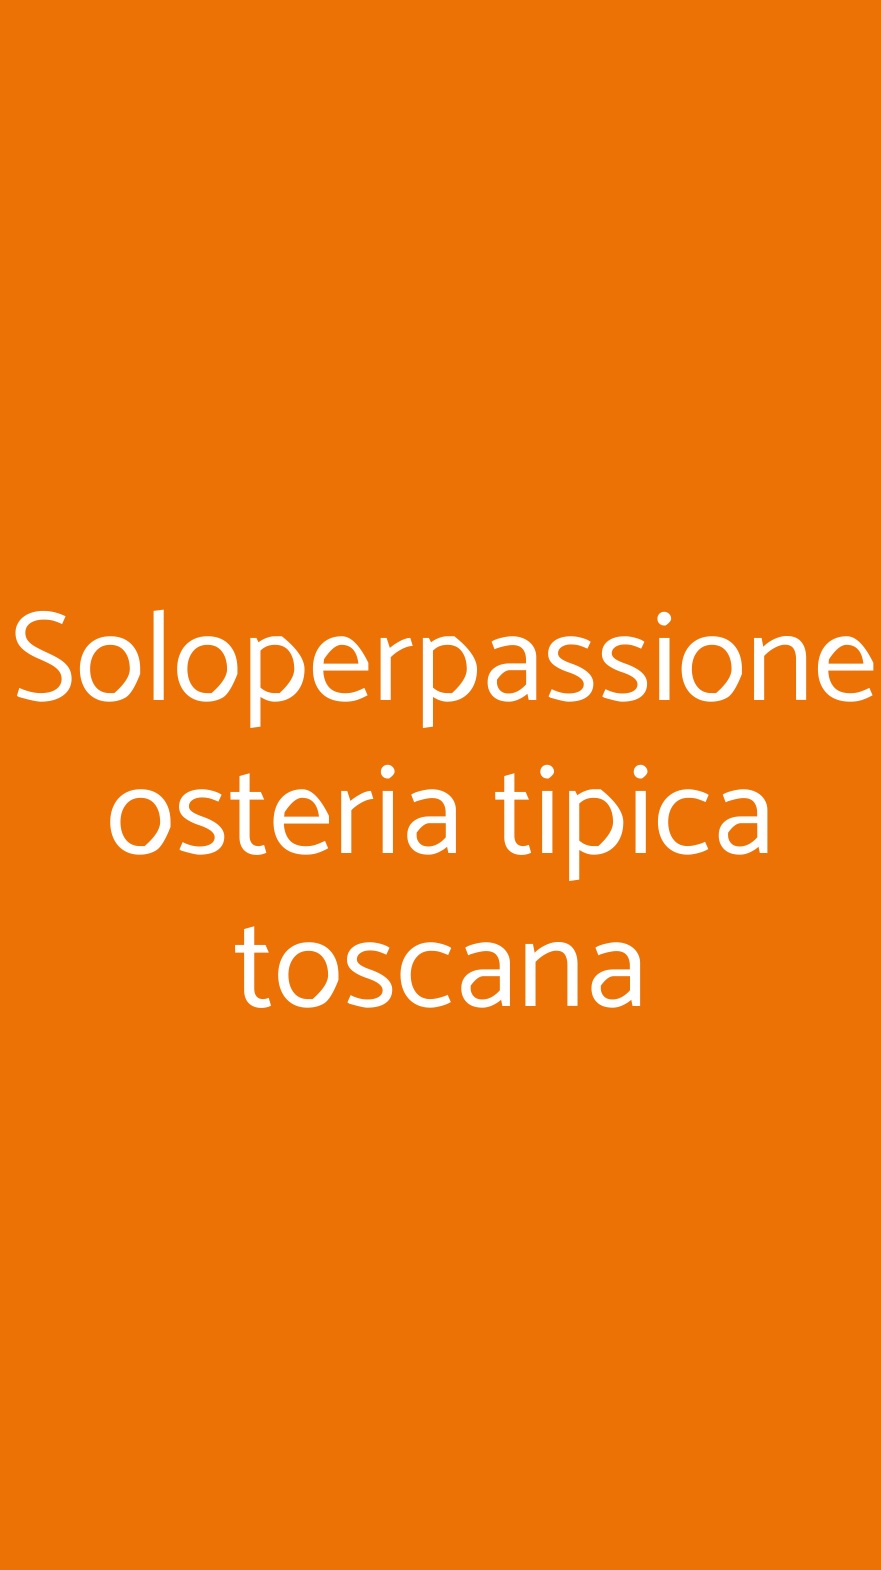 Soloperpassione osteria tipica toscana Monteriggioni menù 1 pagina